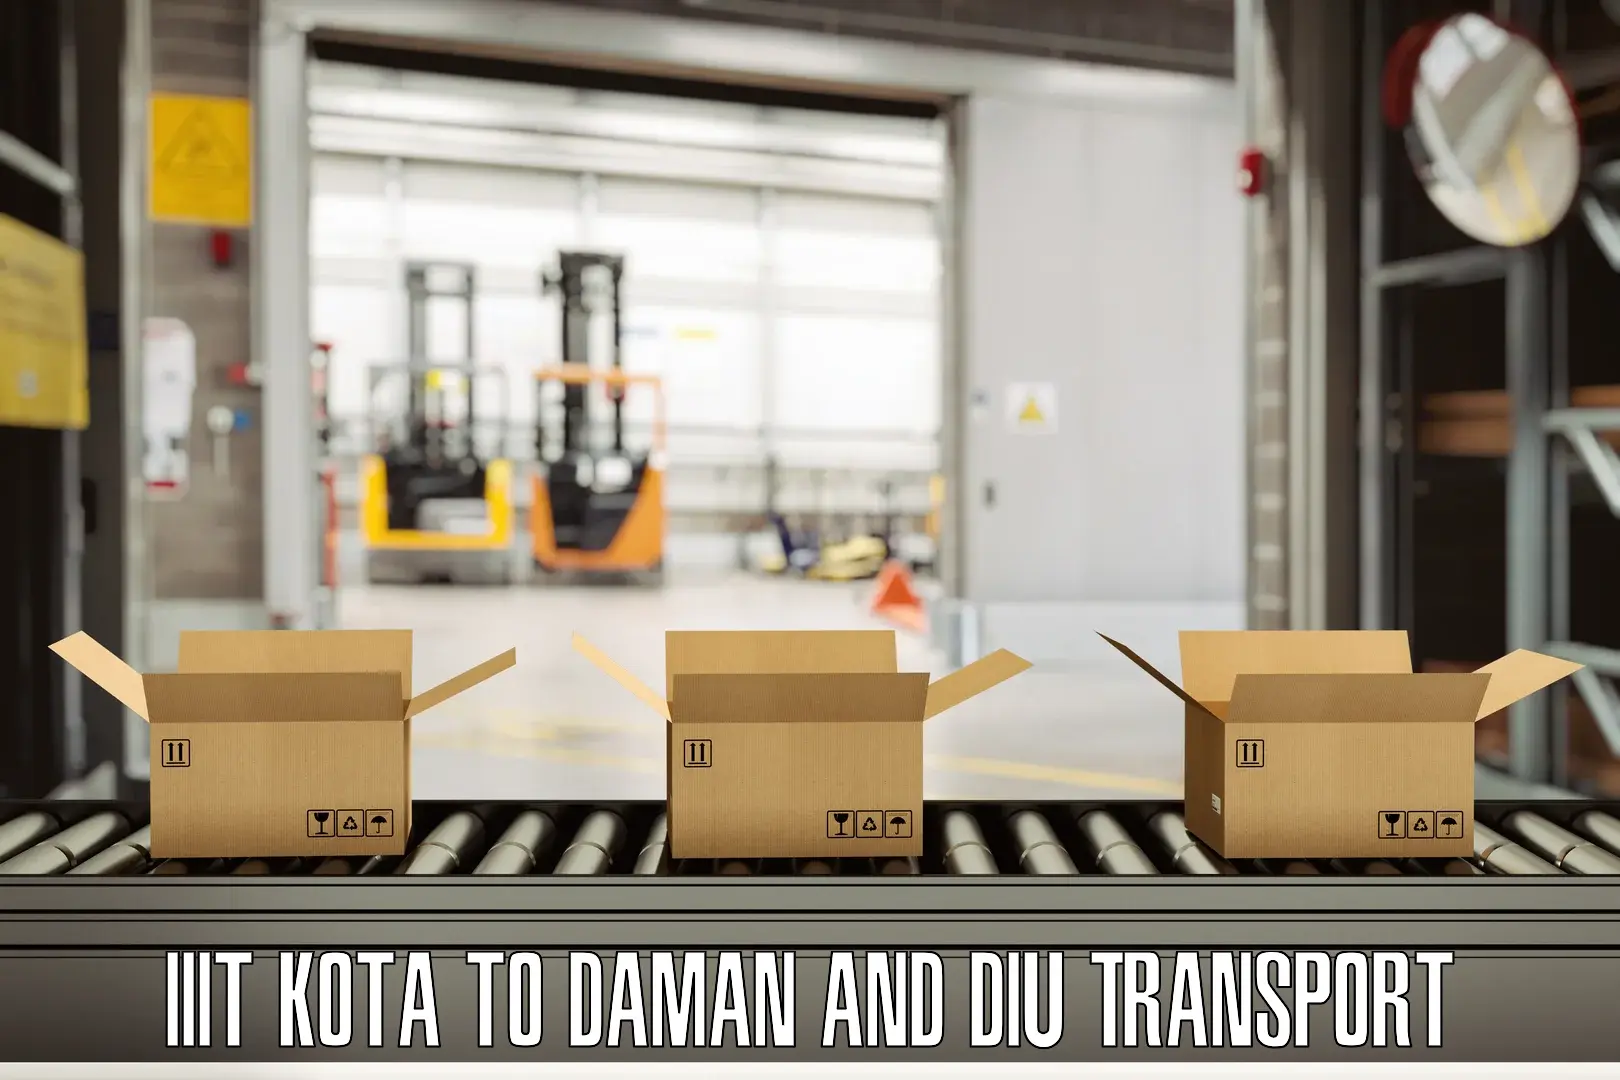 Transport in sharing IIIT Kota to Daman